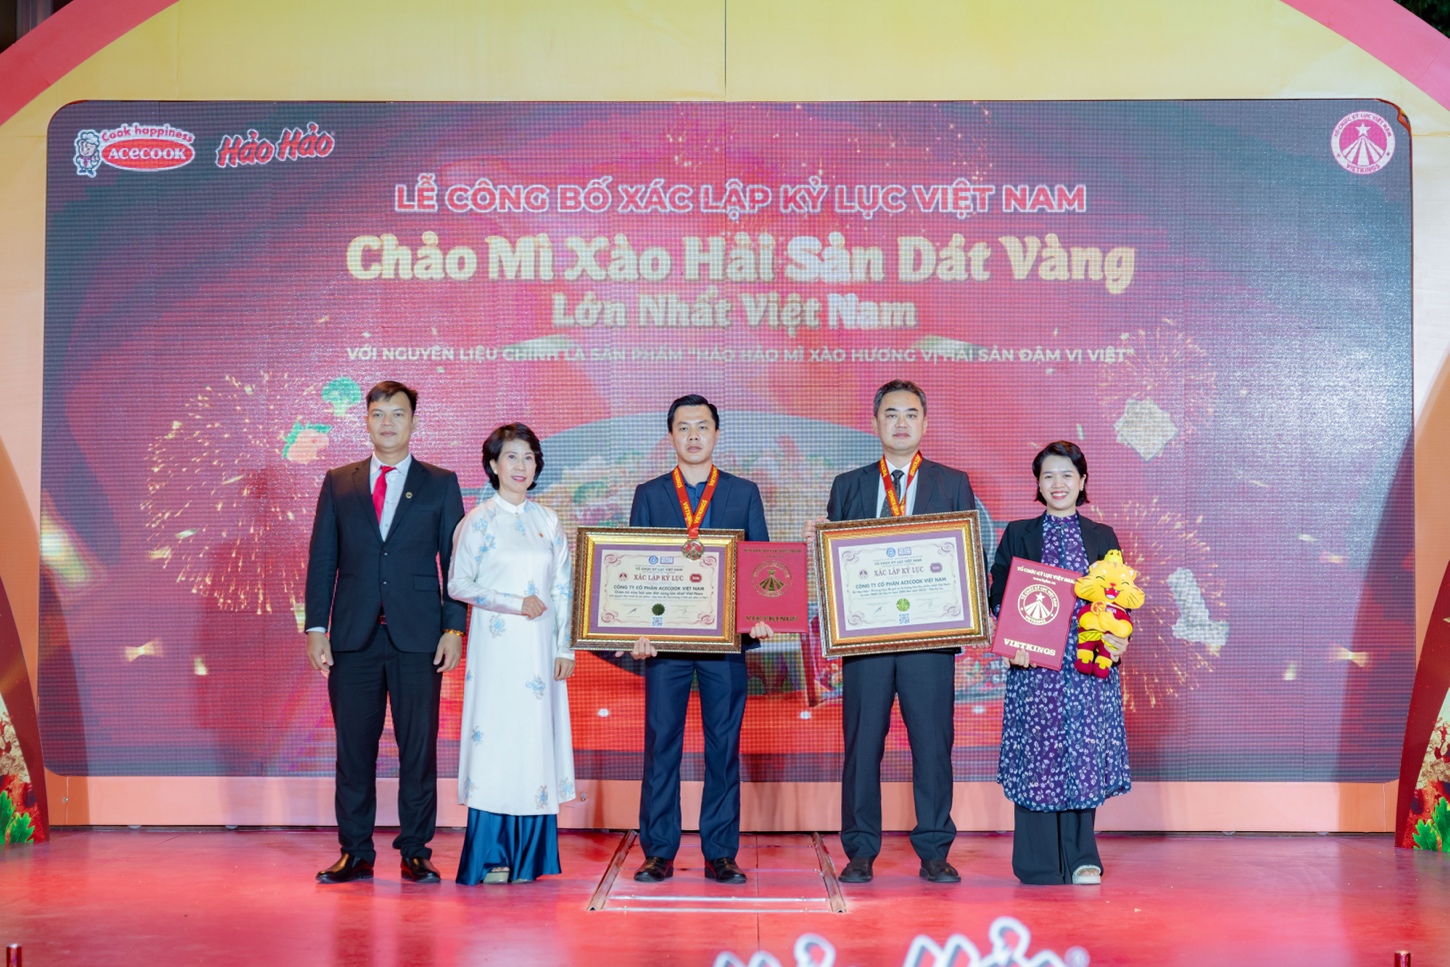 Hảo Hảo xác lập kỷ lục “Chảo mì xào hải sản dát vàng lớn nhất Việt Nam” - Ảnh 1.